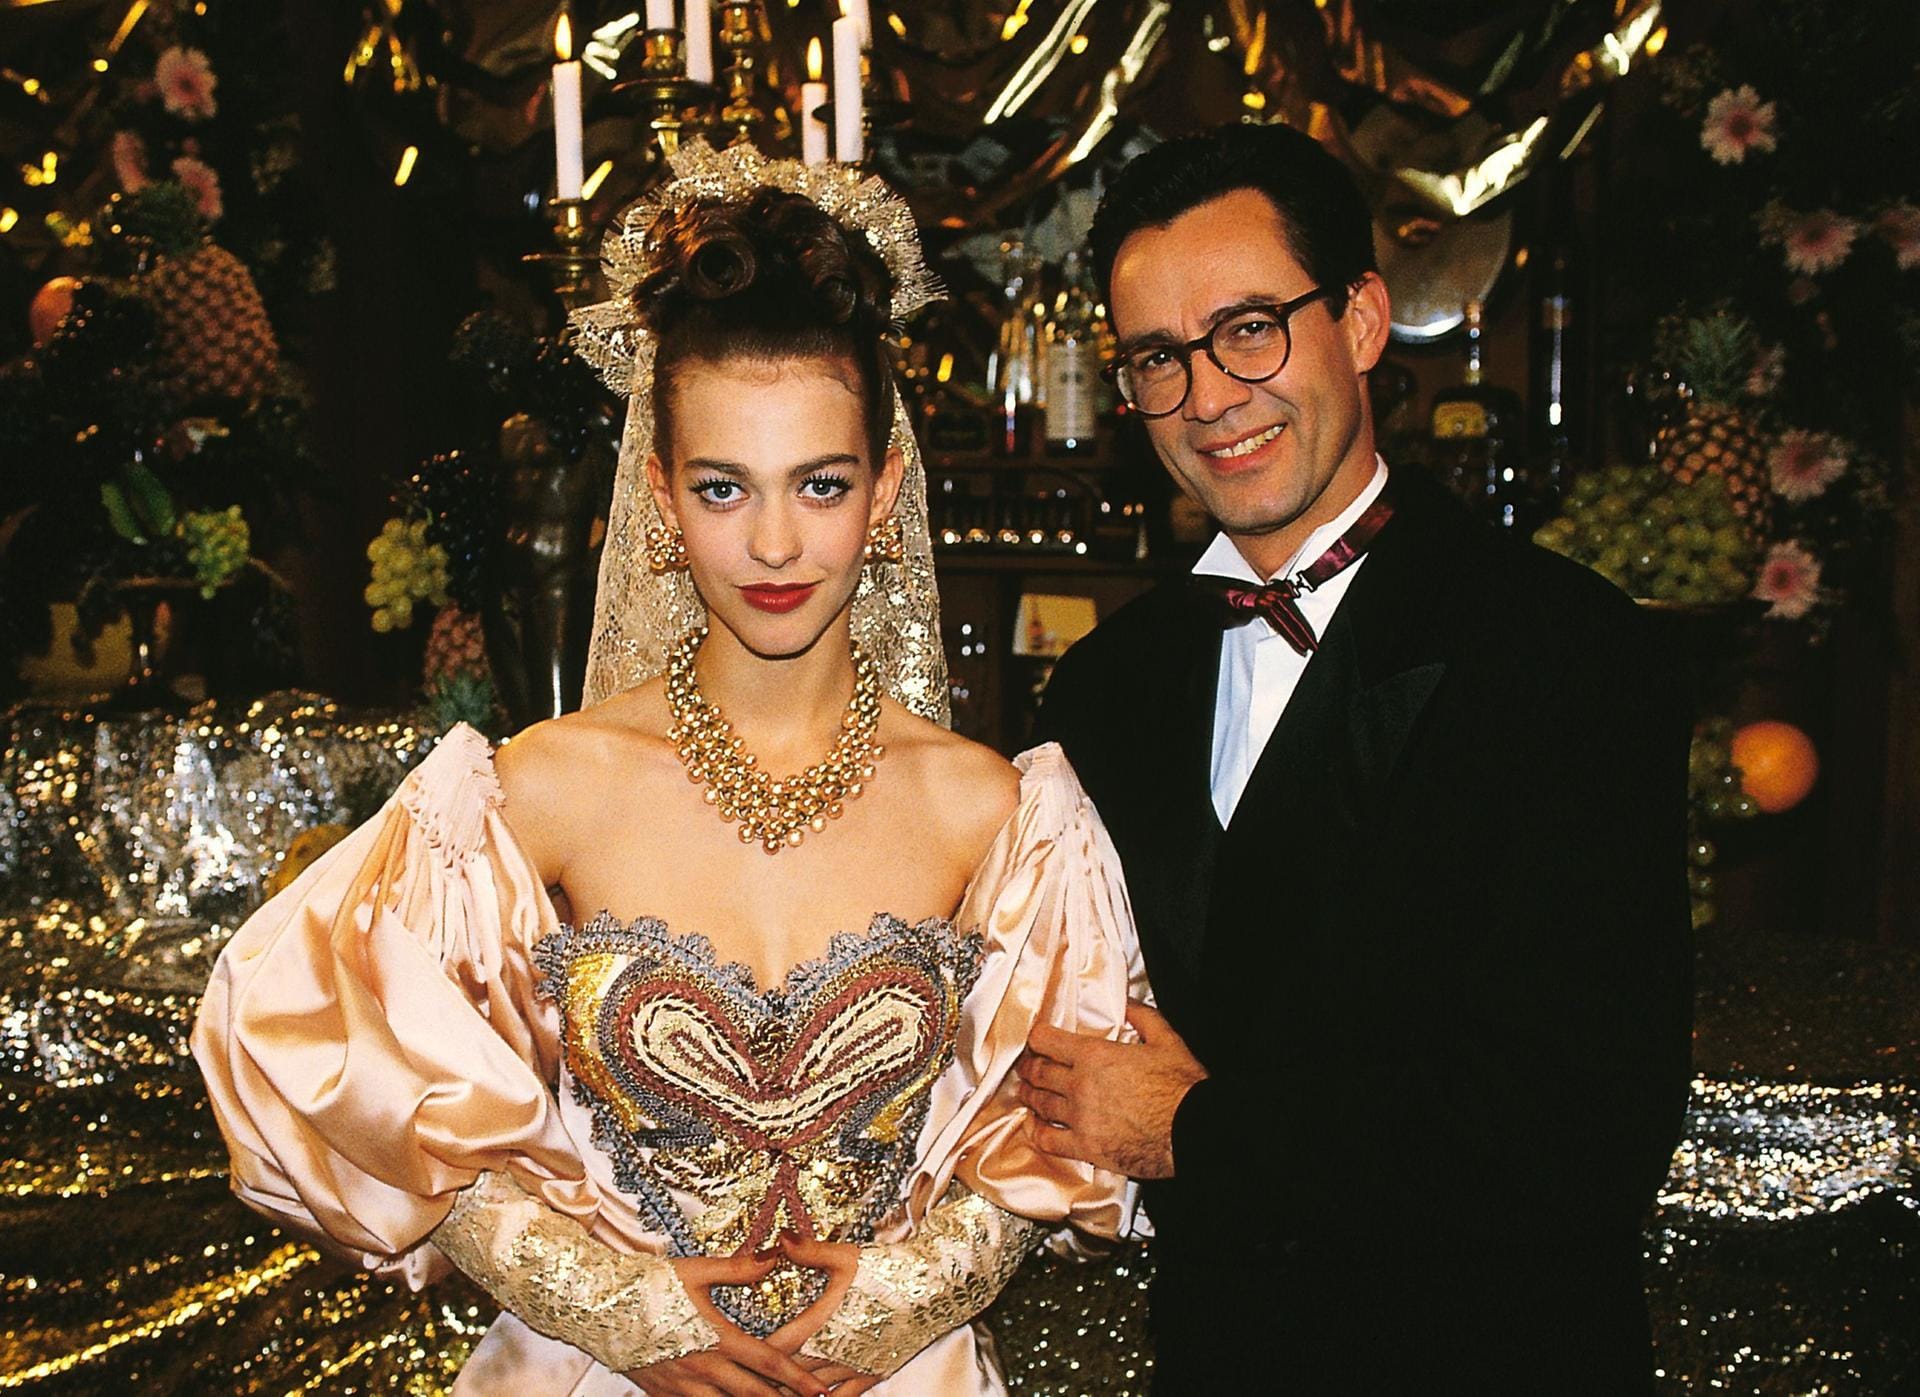 1994: Tina, die lange Zeit mit Heiko Richter liiert war, heiratete dann doch Matthias in Las Vegas.